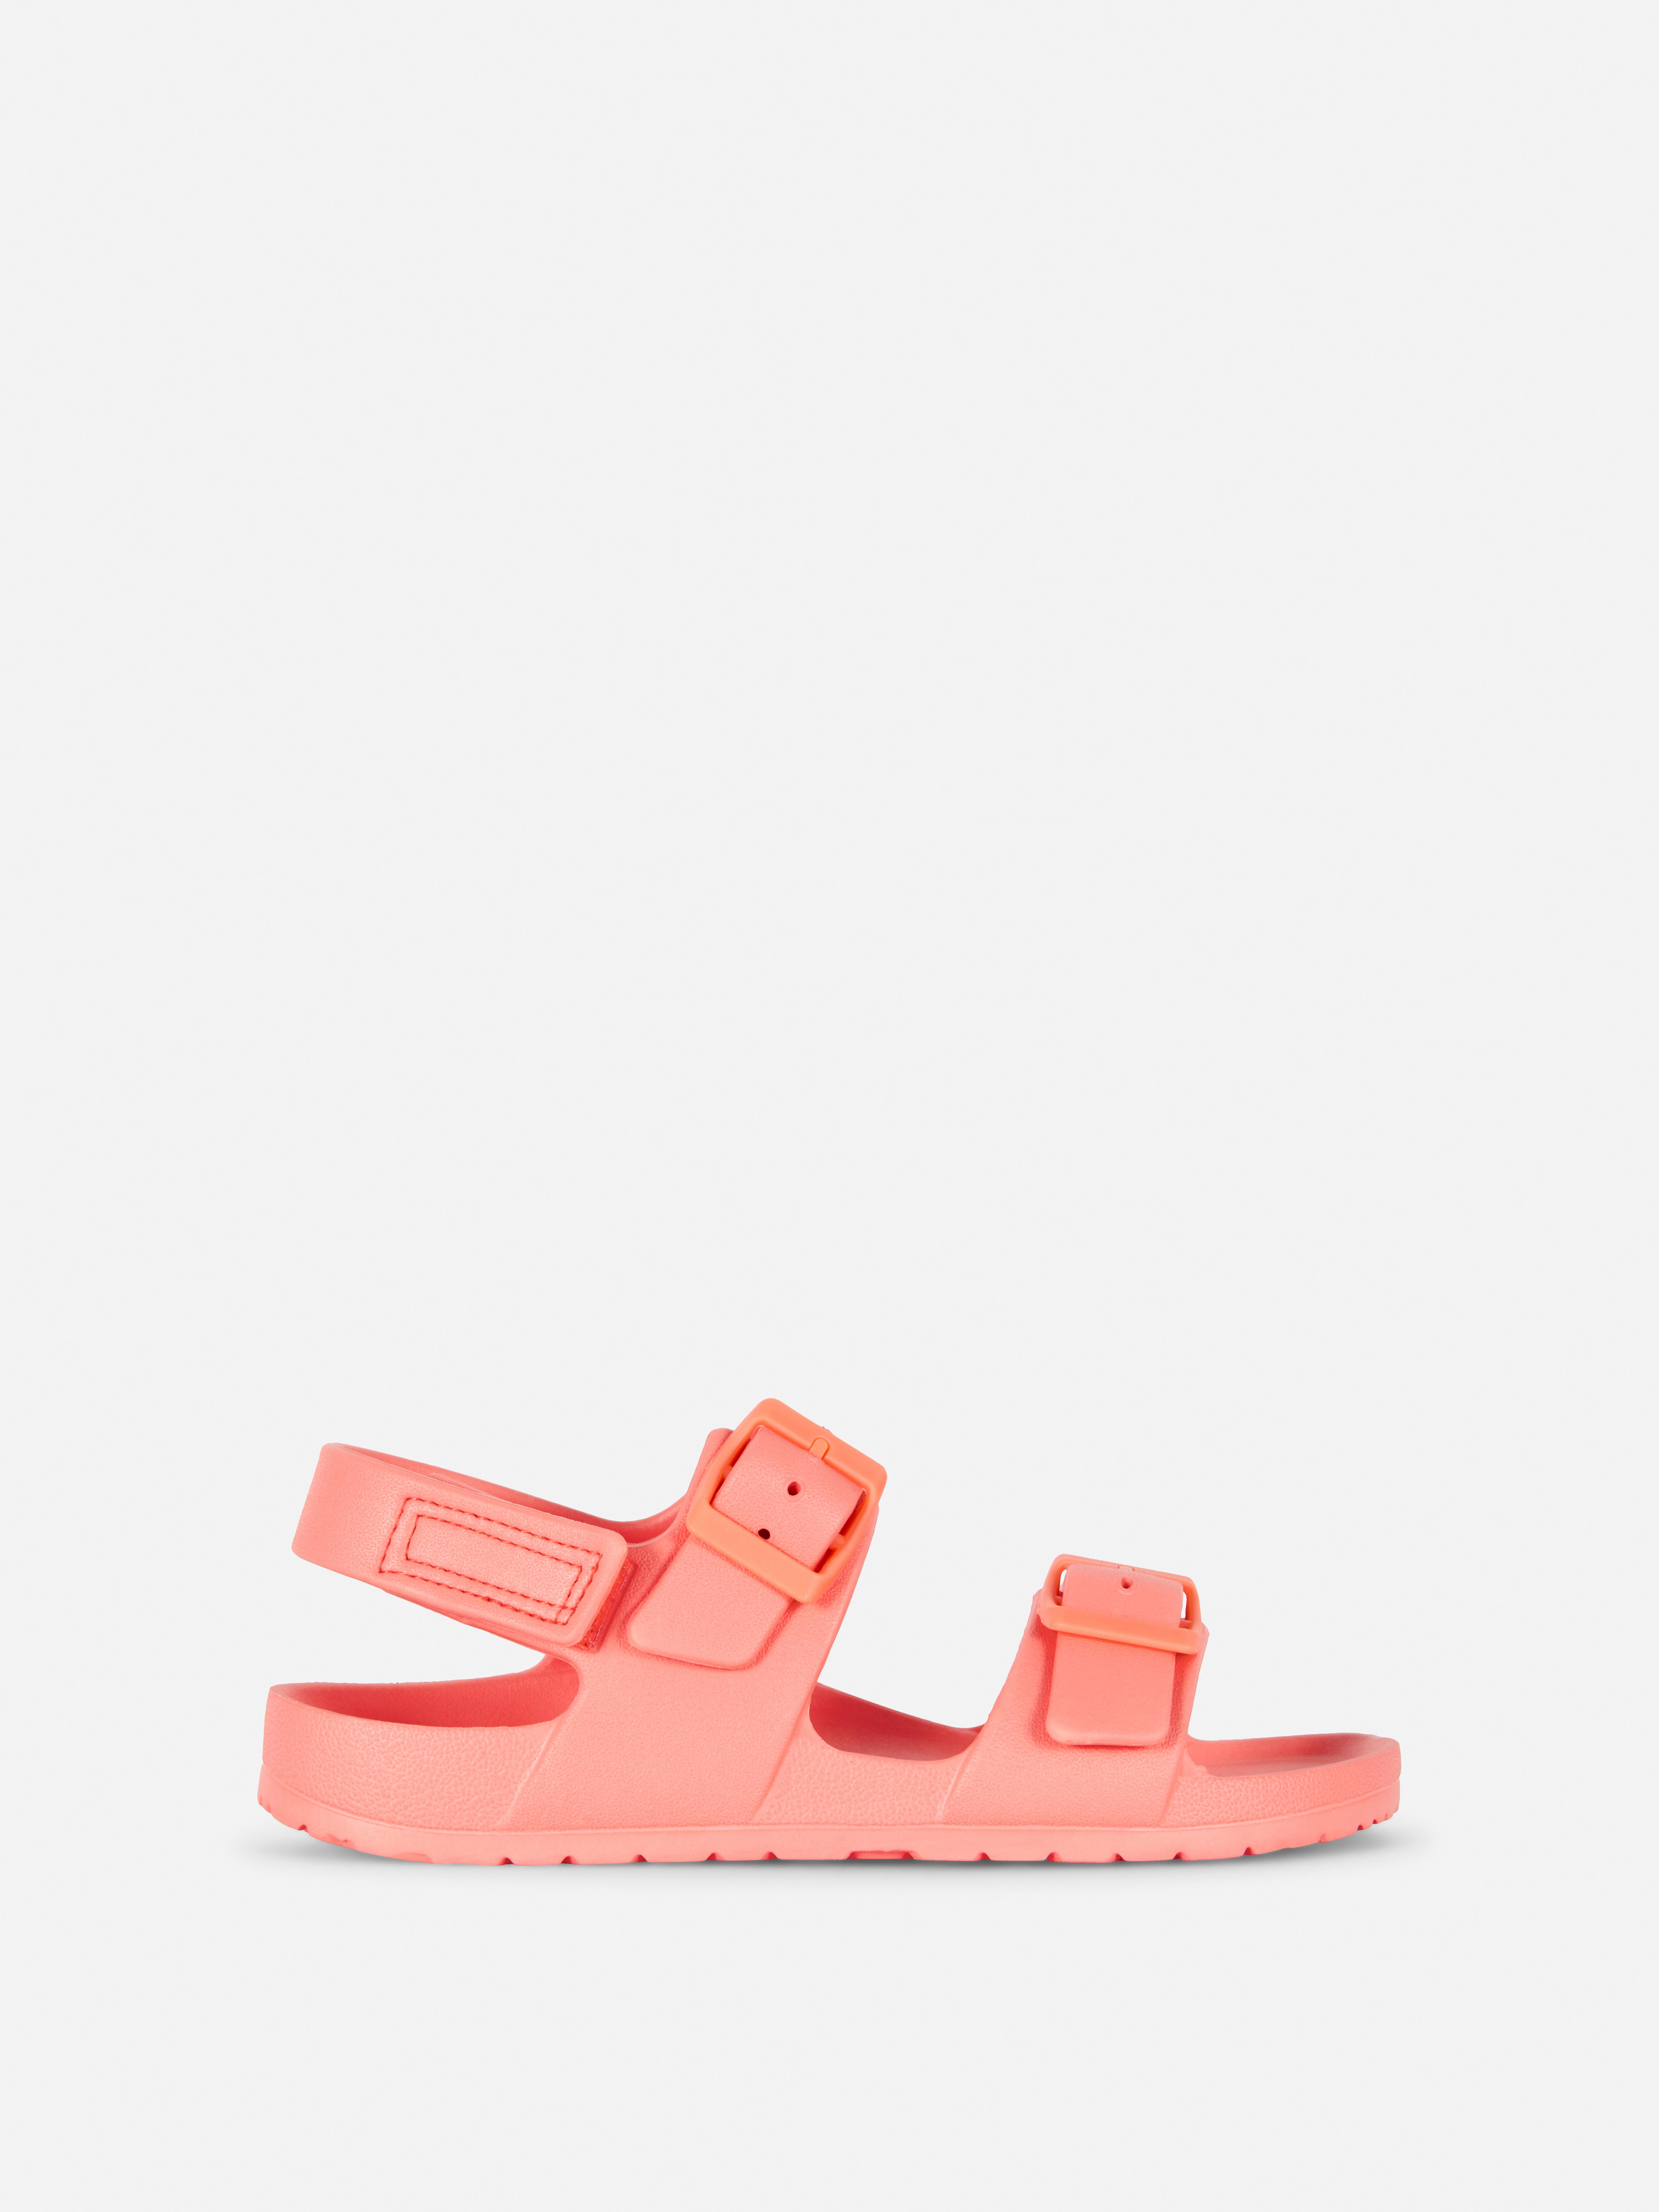 Sandalias con doble tira | Zapatos para niña Moda para niñas | Ropa para niños | Todos los productos Primark | Primark España